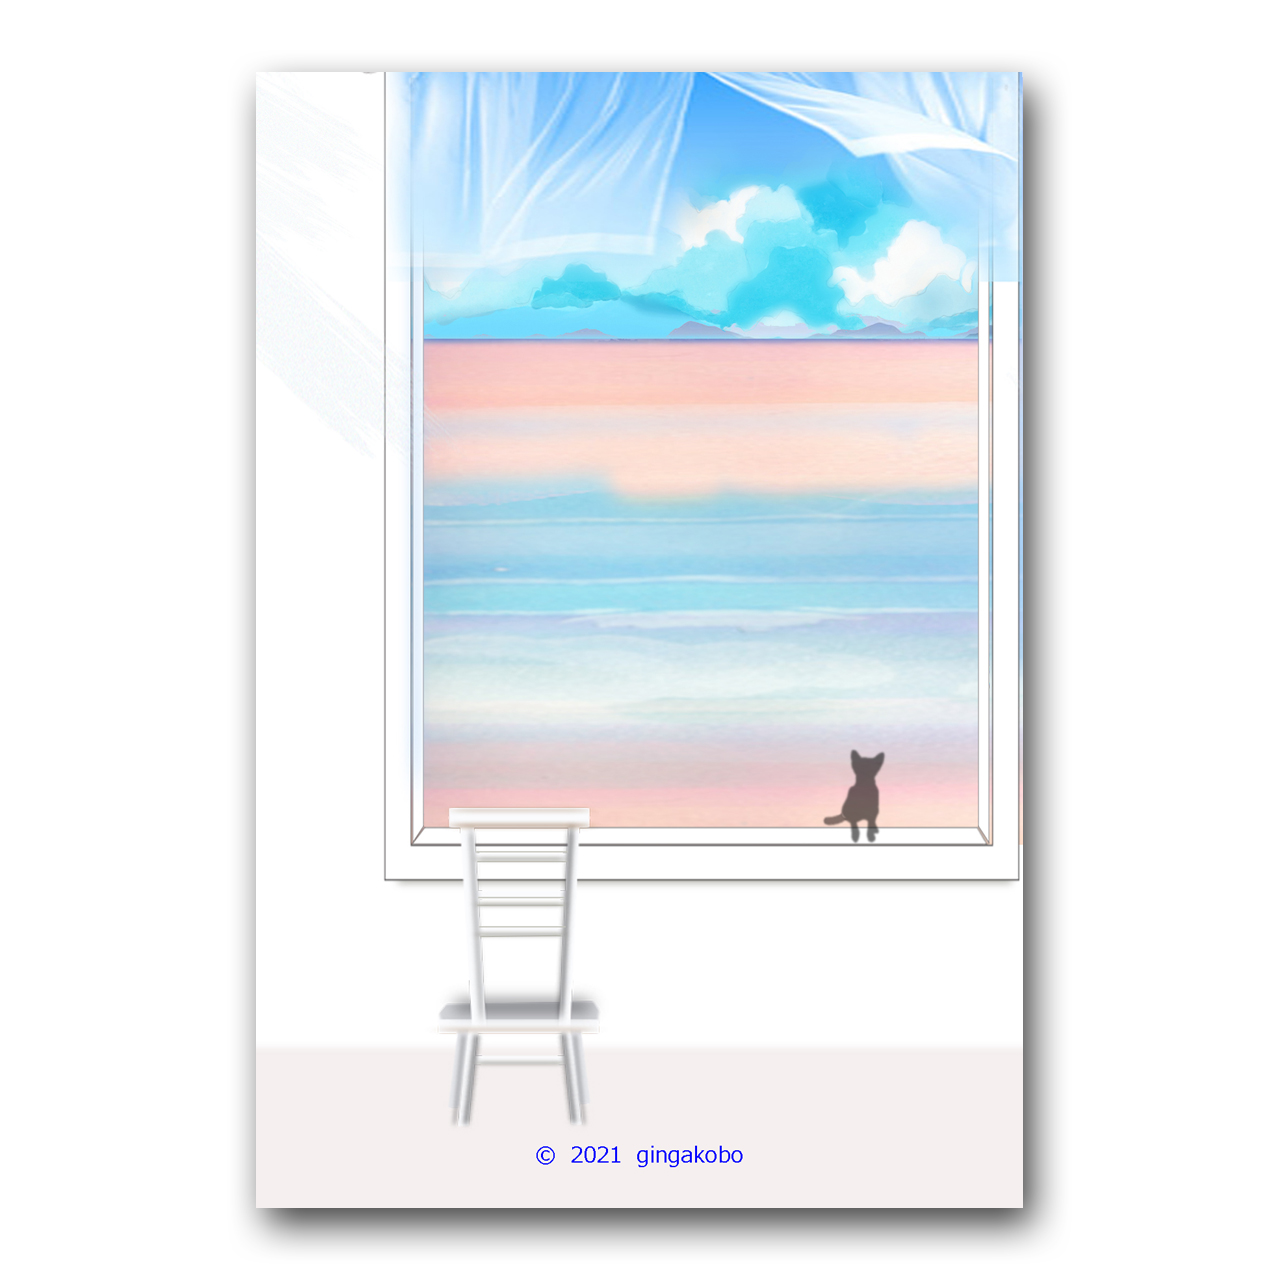 風が言葉の花びらになる 猫 海 ほっこり癒しのイラストポストカード2枚組no 1373 Iichi ハンドメイド クラフト作品 手仕事品の通販